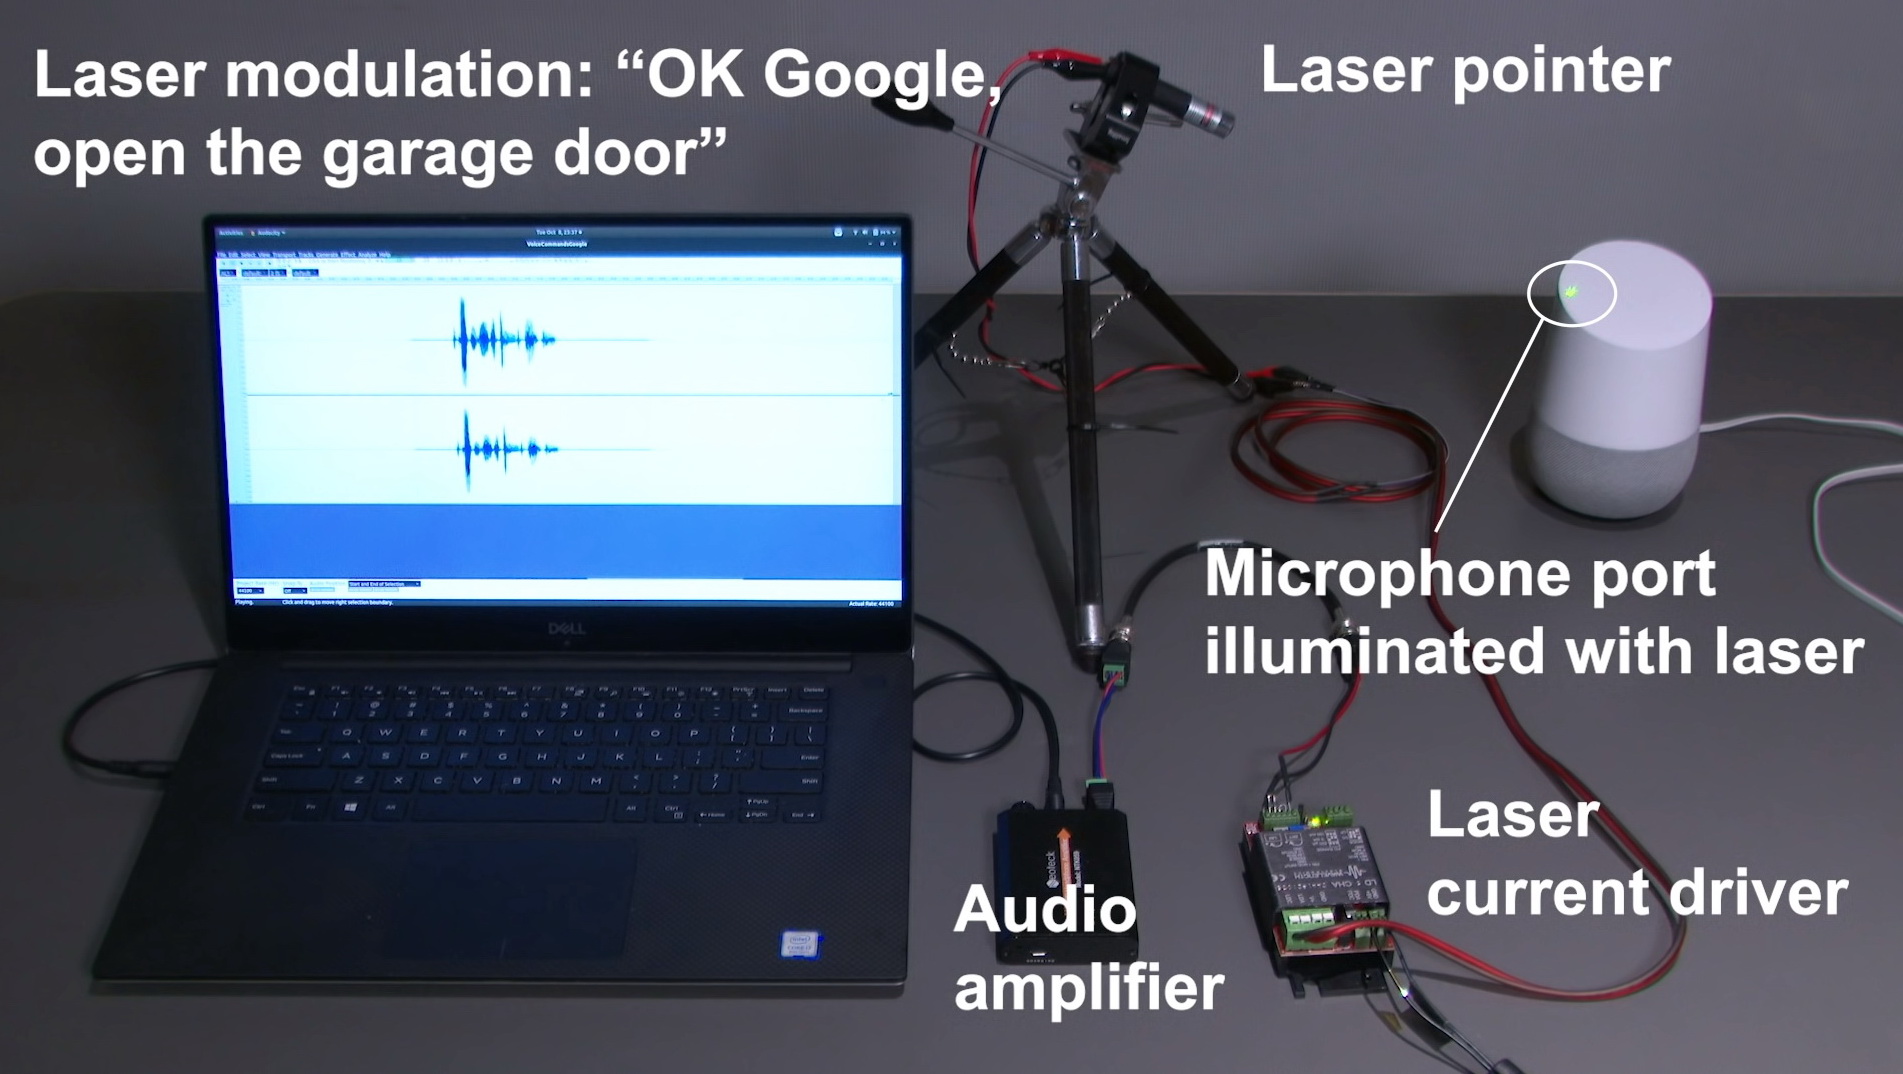 研究員把載有電子訊號的激光束射向智能喇叭的麥克風位置，並偽裝為語音指令，成功入侵系統。（YouTube影片畫面）